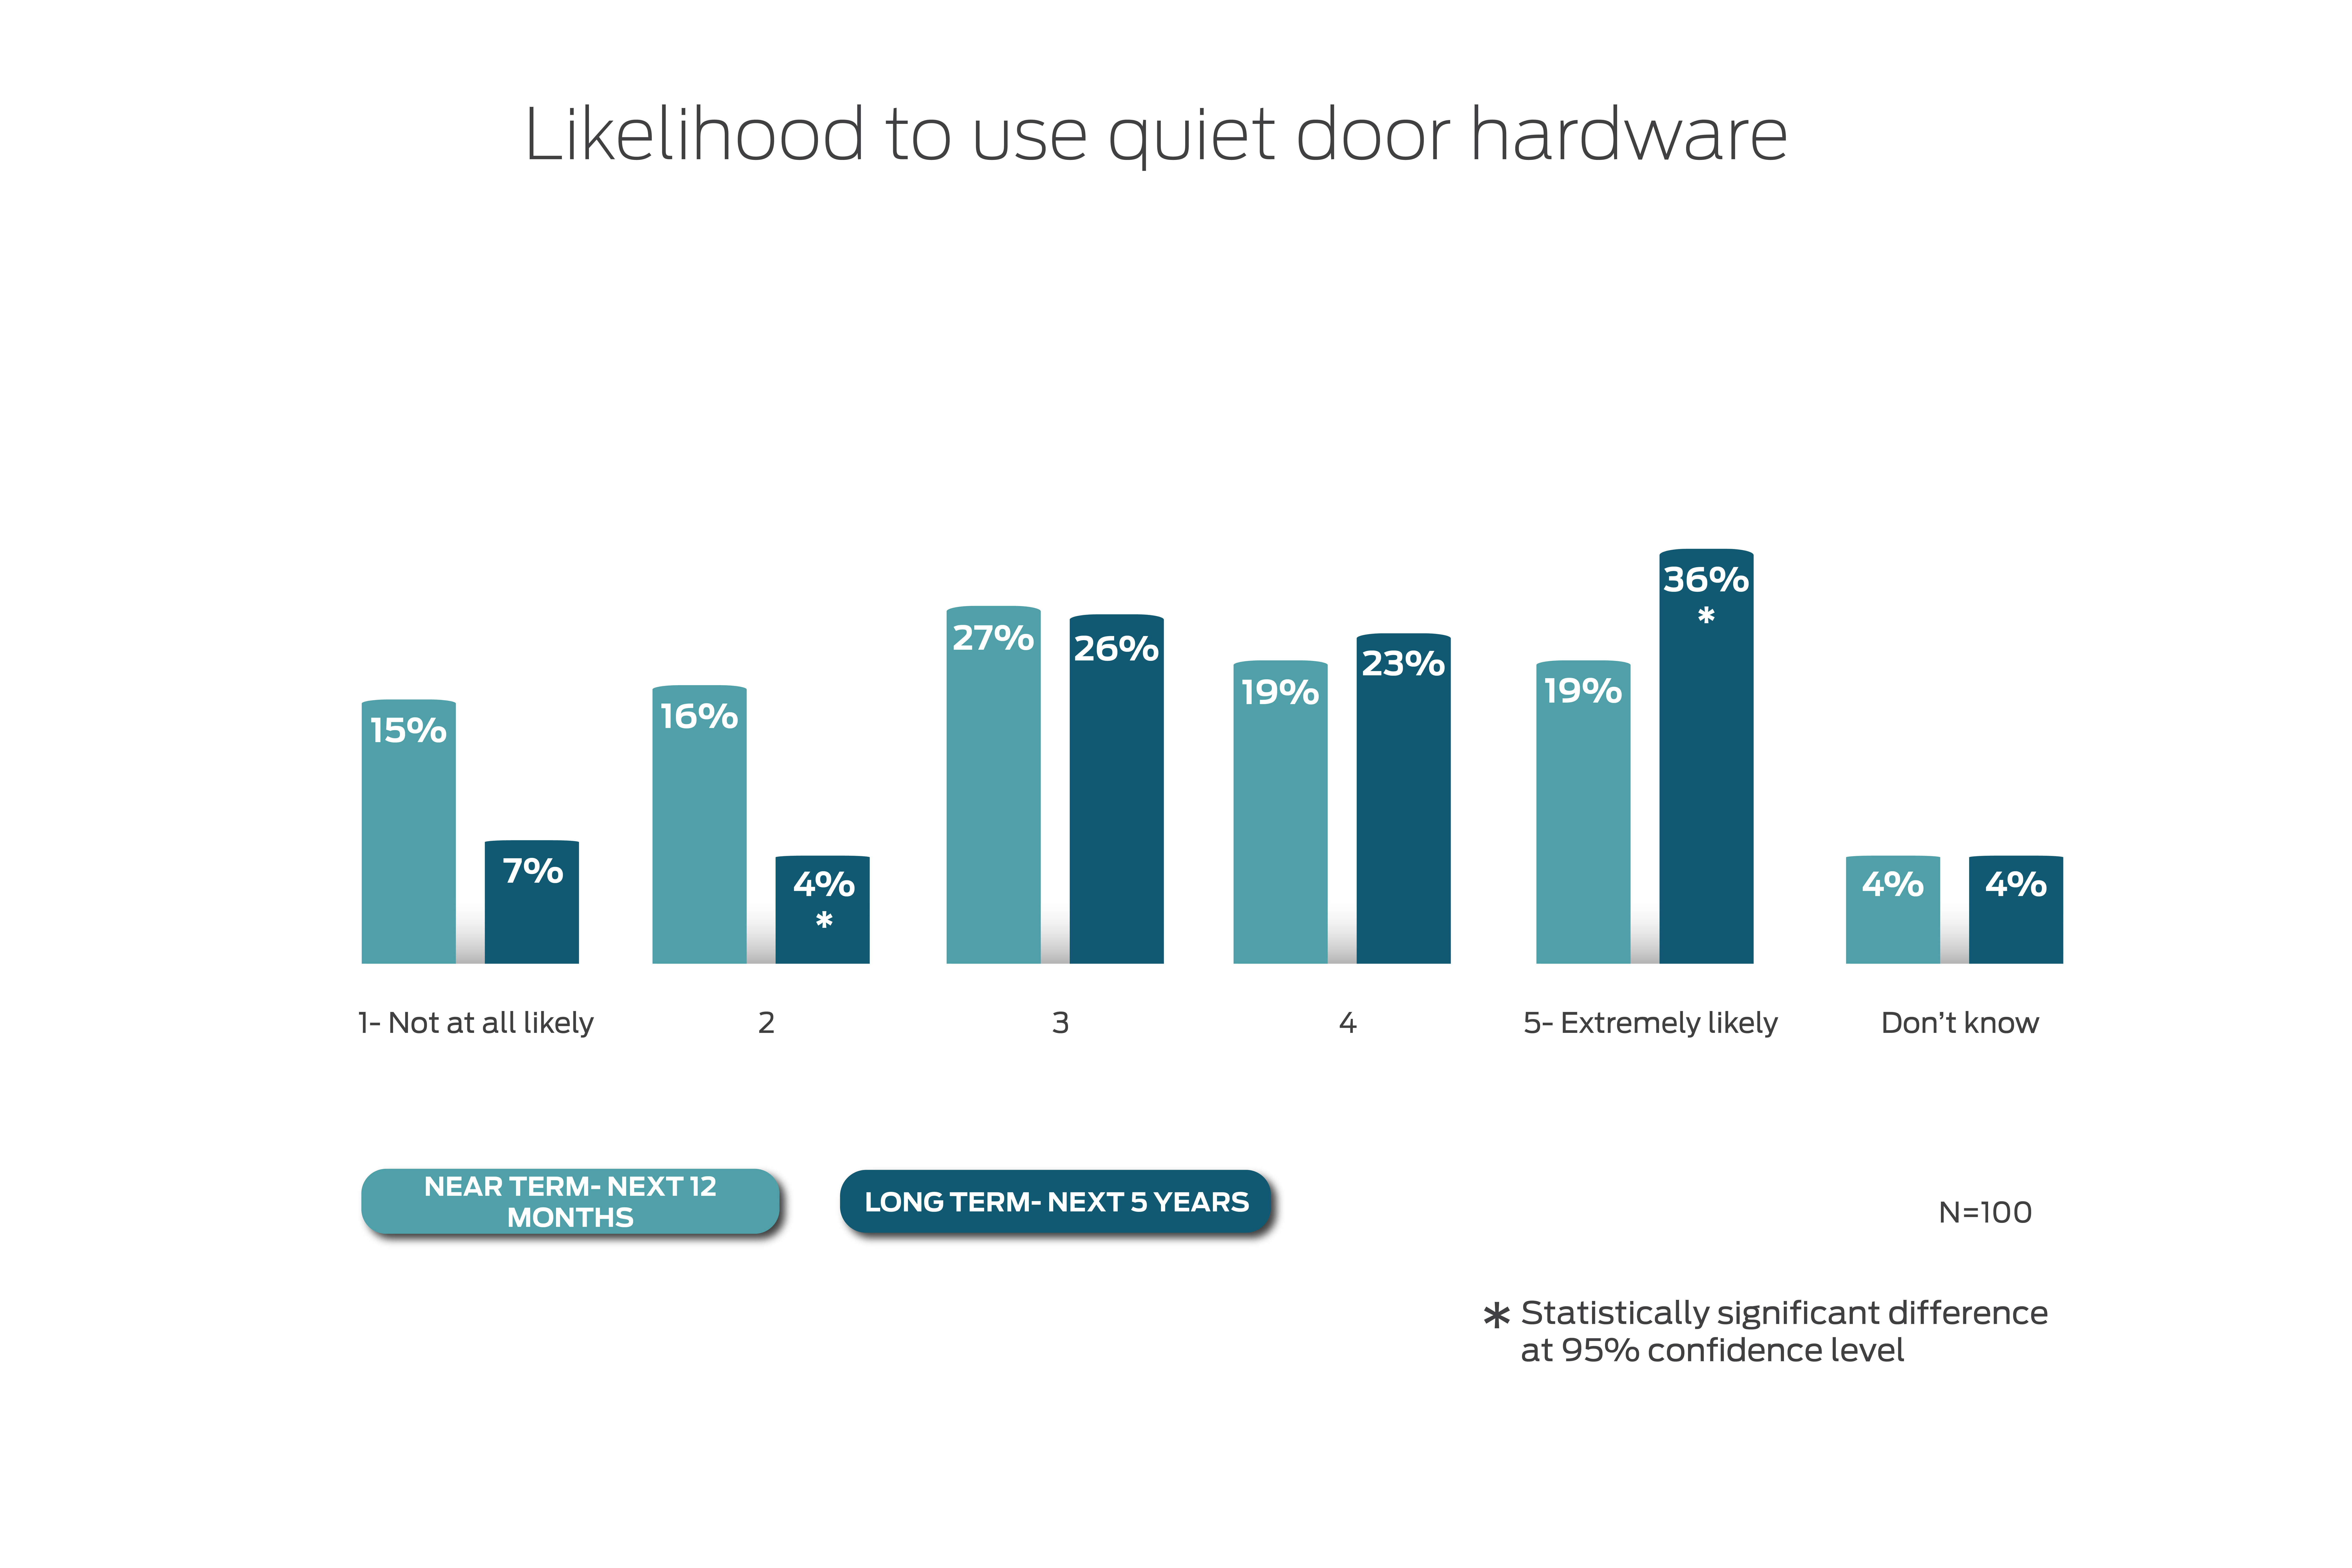 health care trends and changes - quiet door hardware